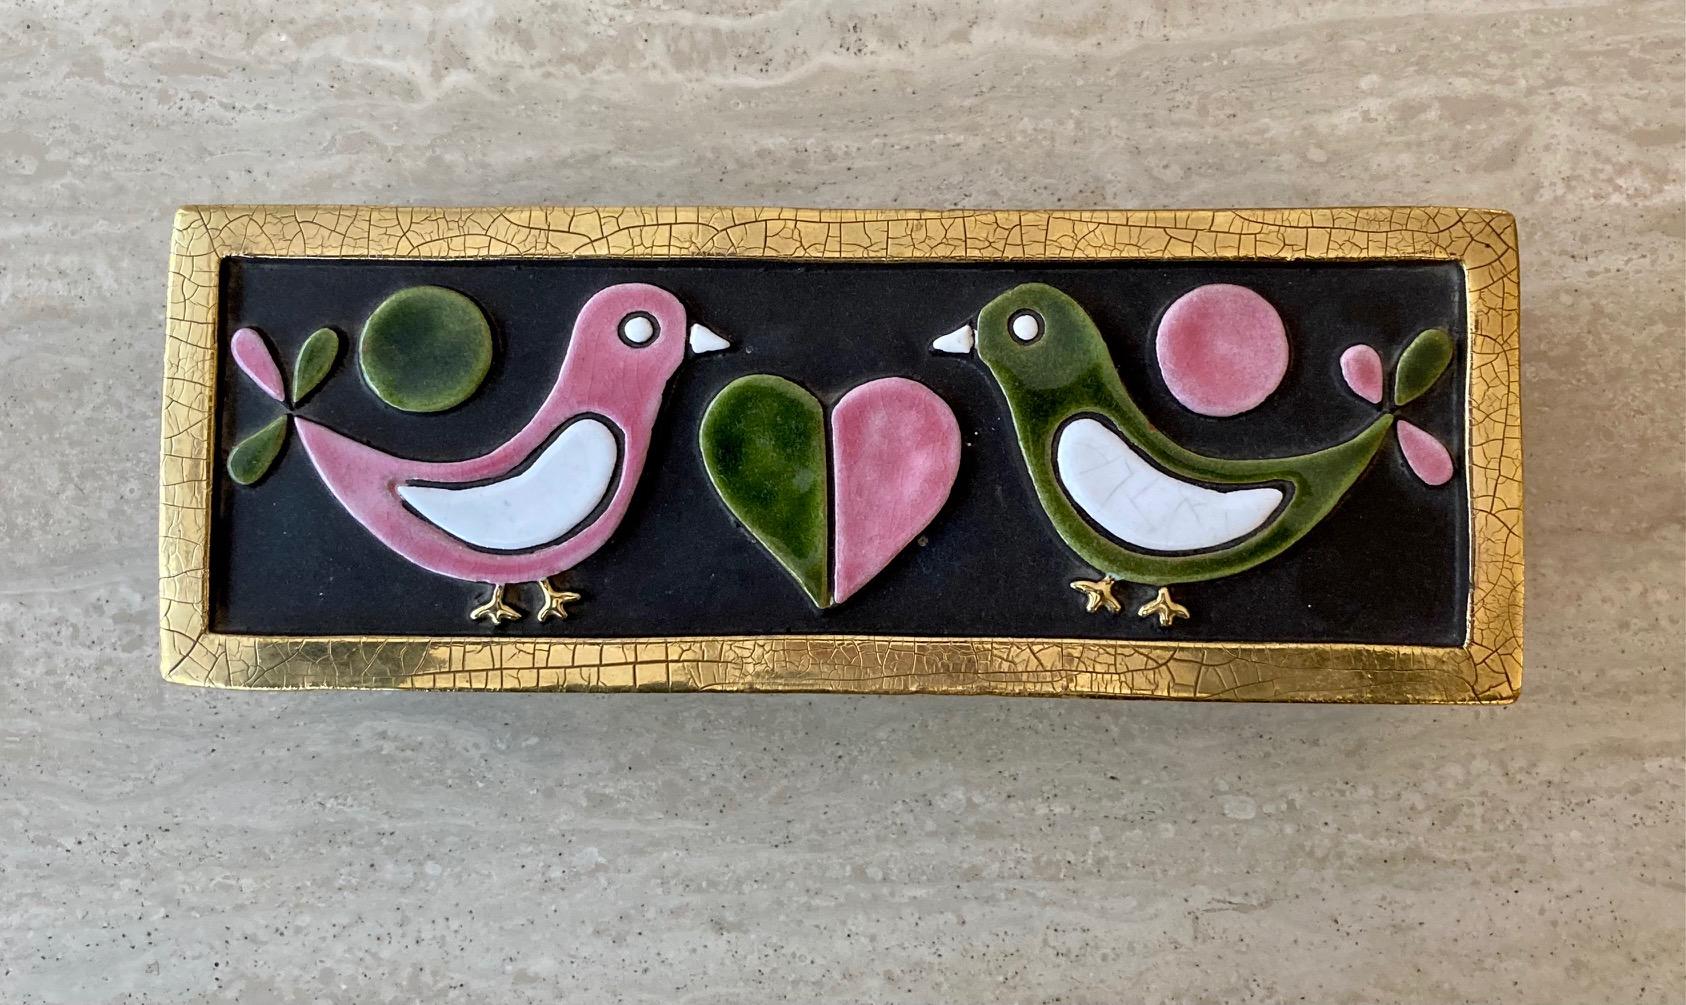 Un plateau en céramique émaillée sur une boîte en bois arborant 2 colombes se faisant face et un cœur au milieu.
 Émaillé dans des tons de rose, blanc, noir et vert. 
Bords dorés craquelés. 

Feutre vert d'origine à l'arrière de la boîte et sur le